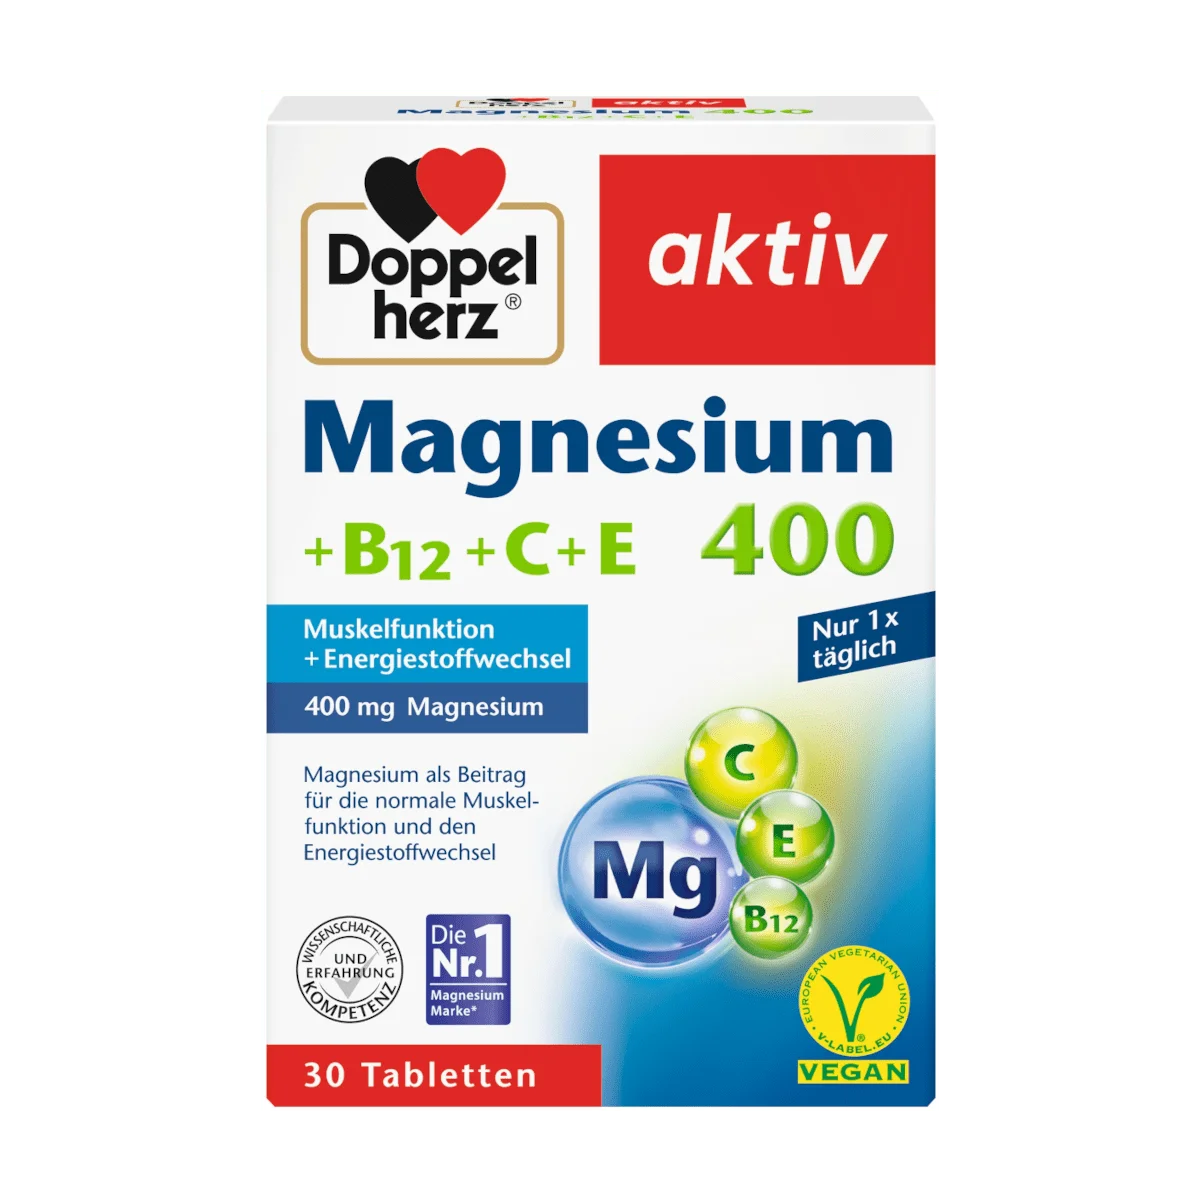 Doppelherz Magnesium 400 + B12 + C + E, 30 Tbl